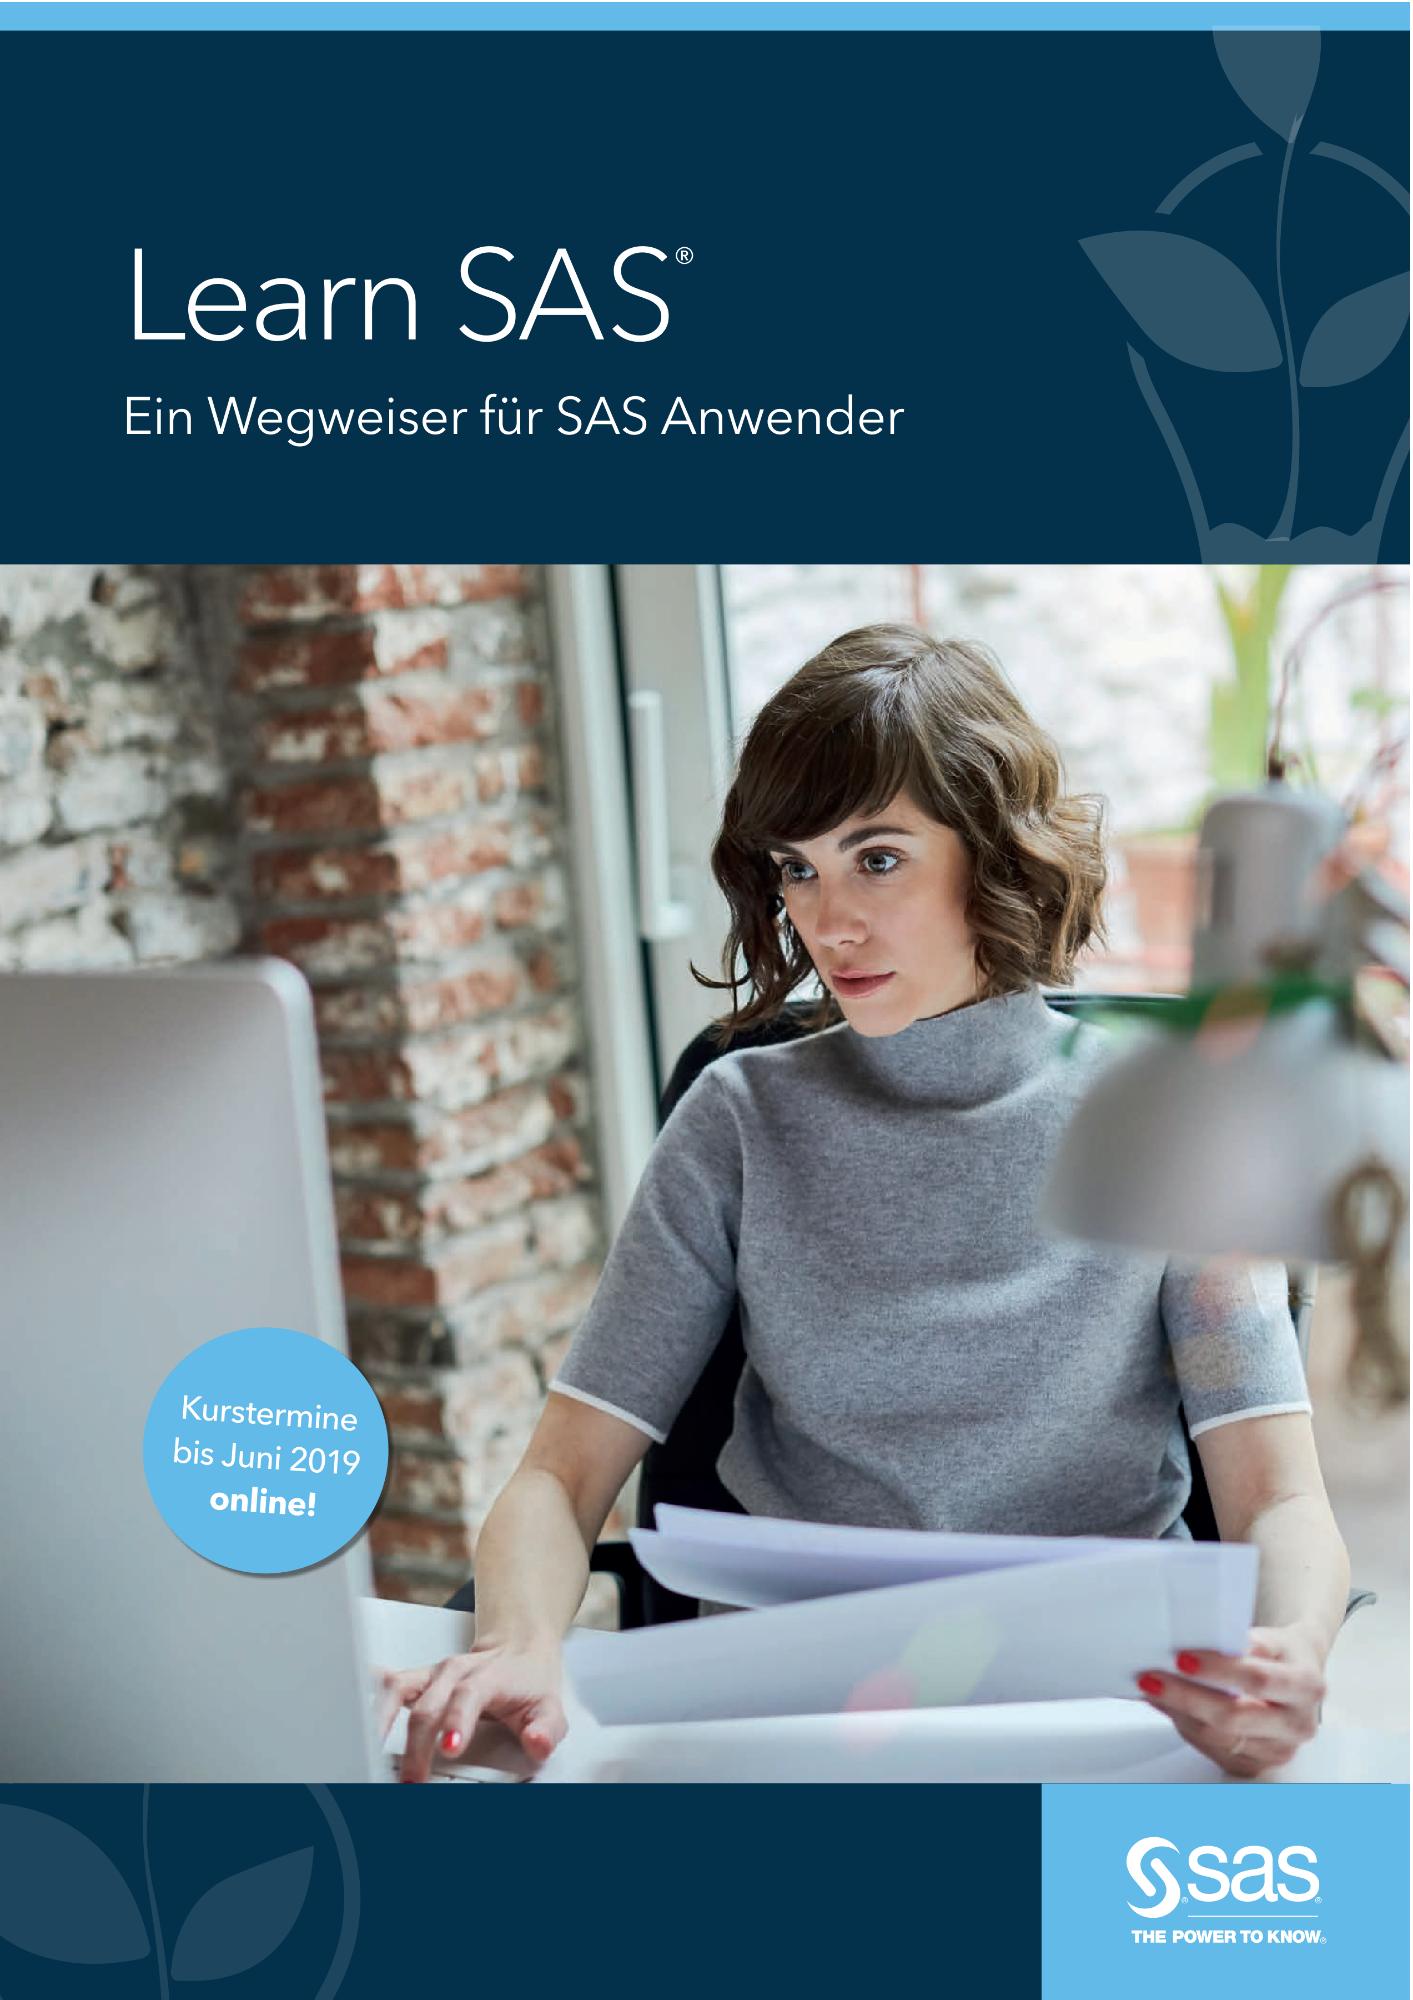 Learn SAS - Ein Wegweiser für SAS Anwender